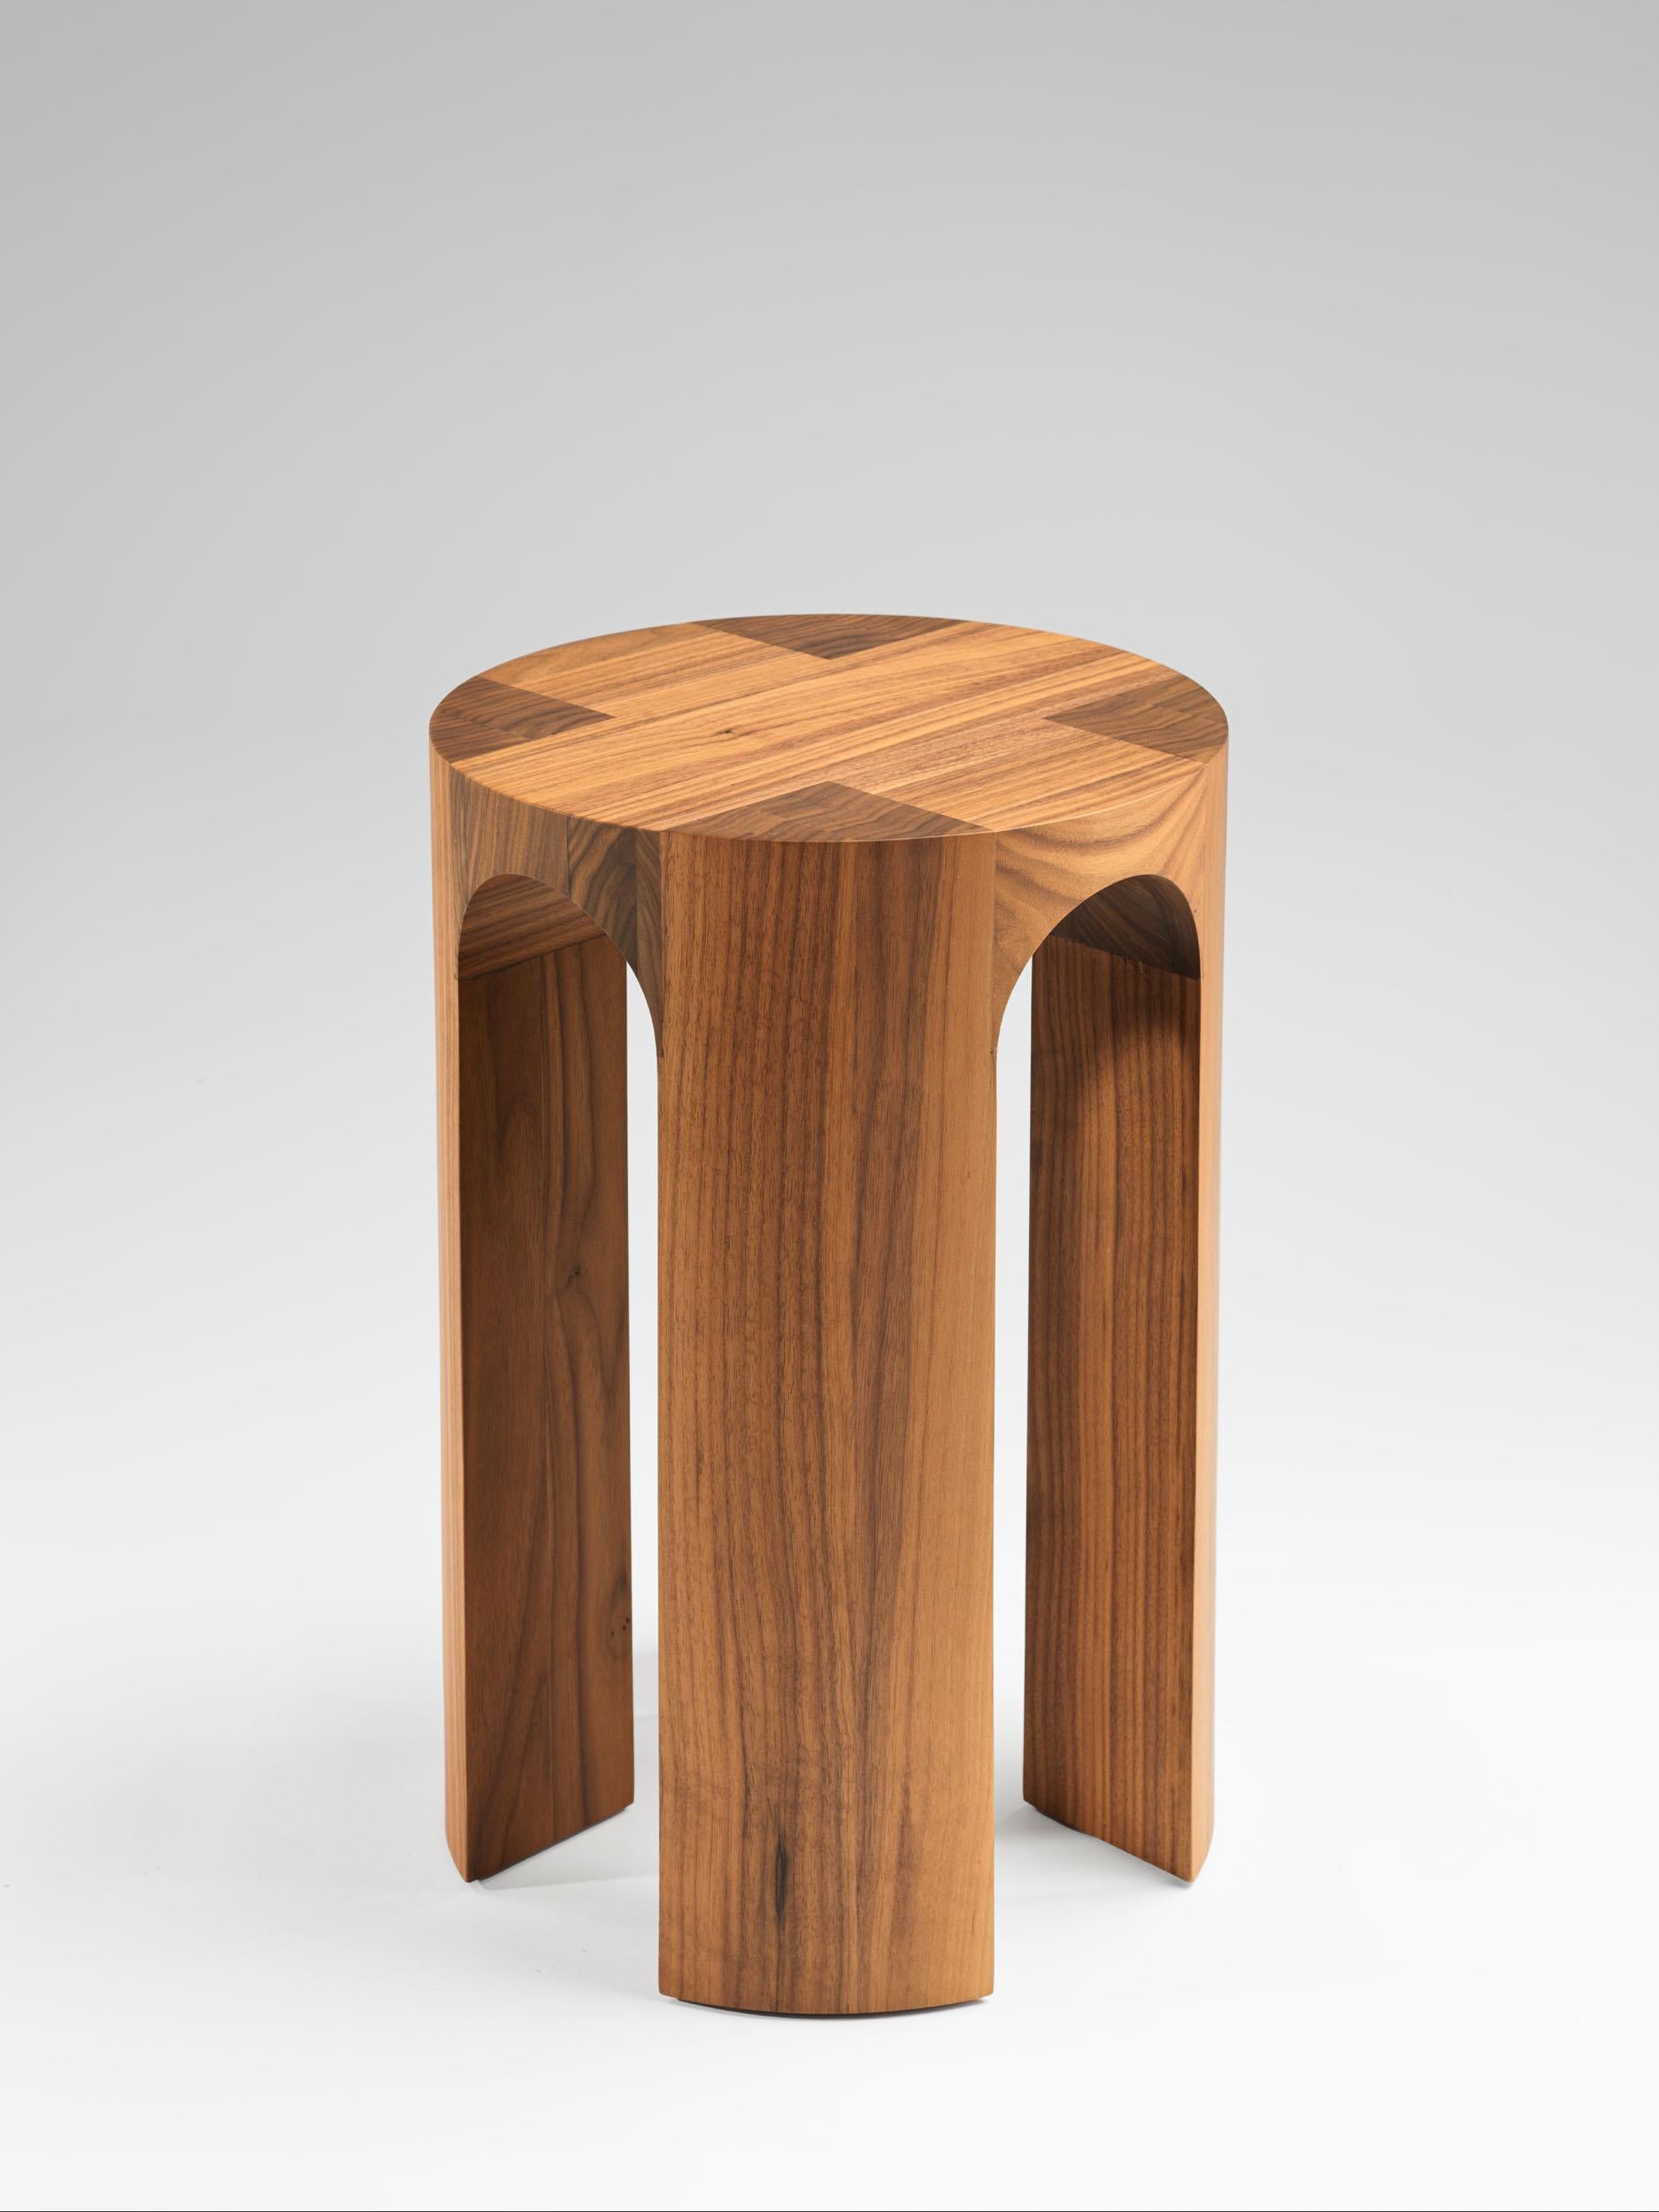 Arcus hocker aus nussbaumholz von Tim Vranken
MATERIALIEN: Amerikanischer Nussbaum
Abmessungen: 30,5 x H 45 cm 


Tim Vranken ist ein belgischer Möbeldesigner, der sich auf solide, handgefertigte Möbel spezialisiert hat. Bei seinen Entwürfen stehen